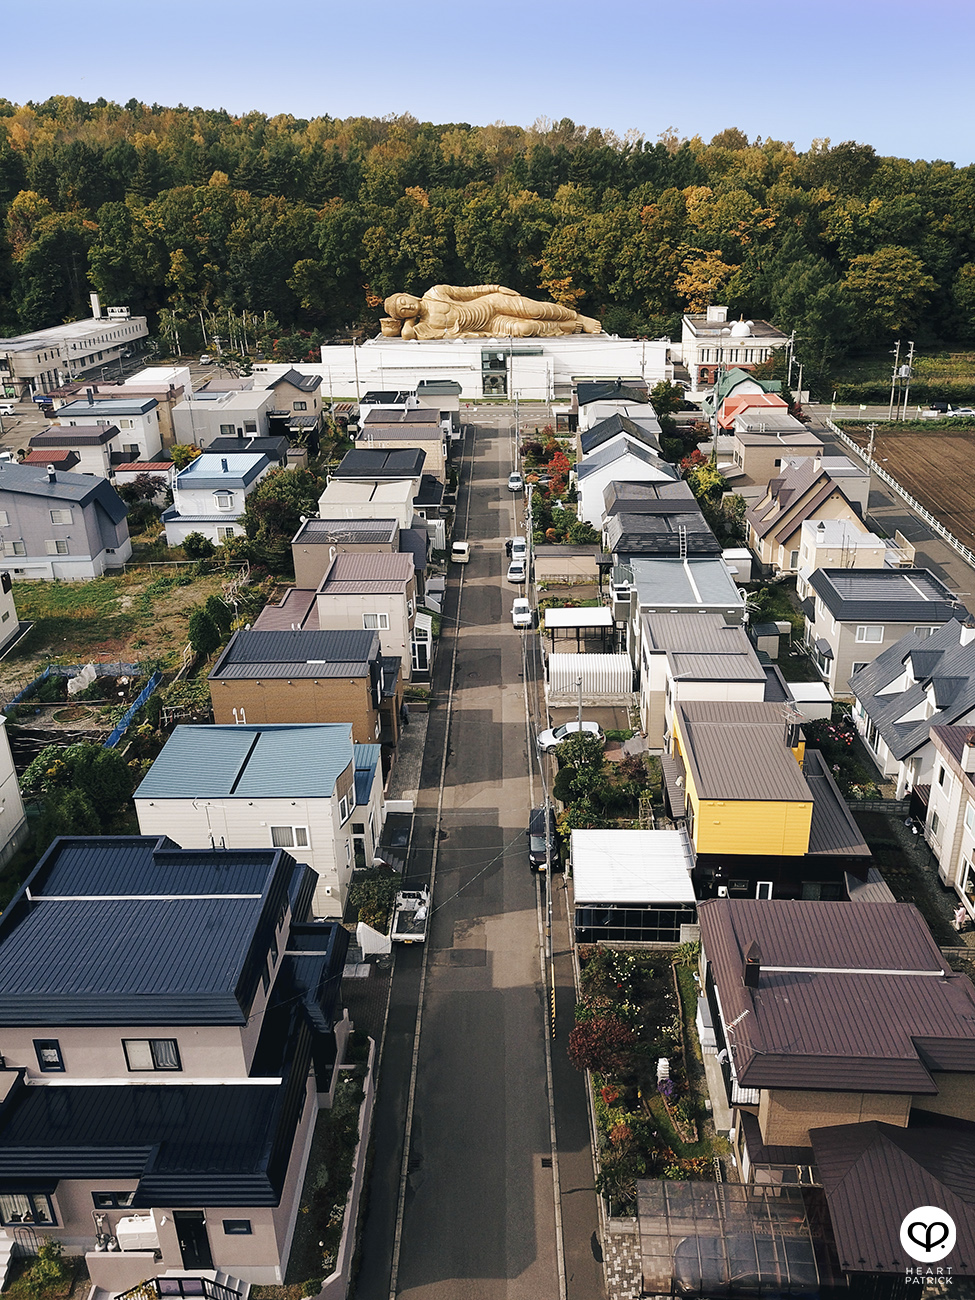 heartpatrick travel aerial drone dji mavic pro photography hokkaido japan